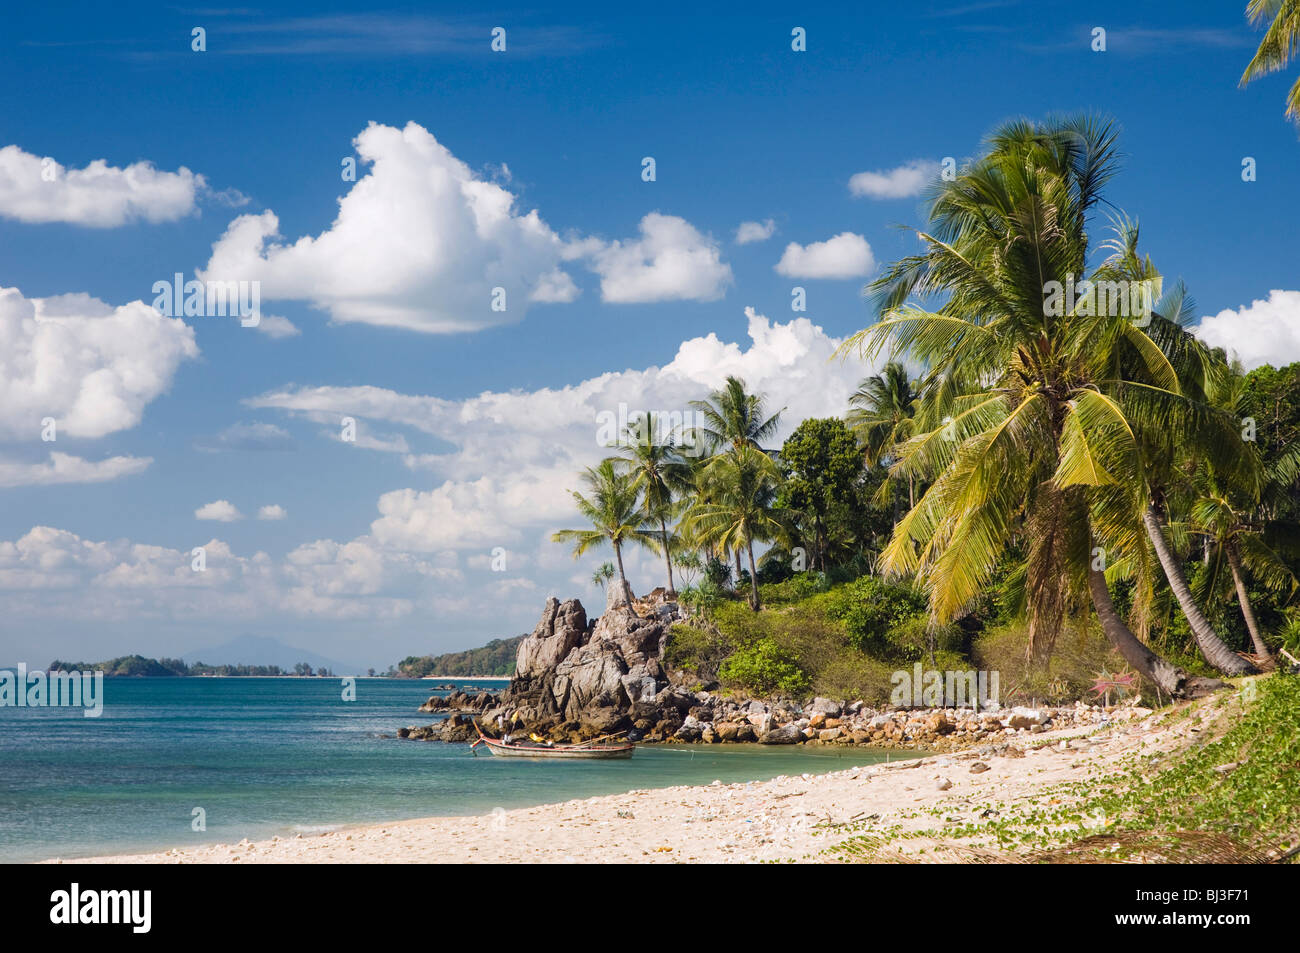 Palm beach, Klong Khong Beach, Ko Lanta or Koh Lanta island, Krabi, Thailand, Asia Stock Photo